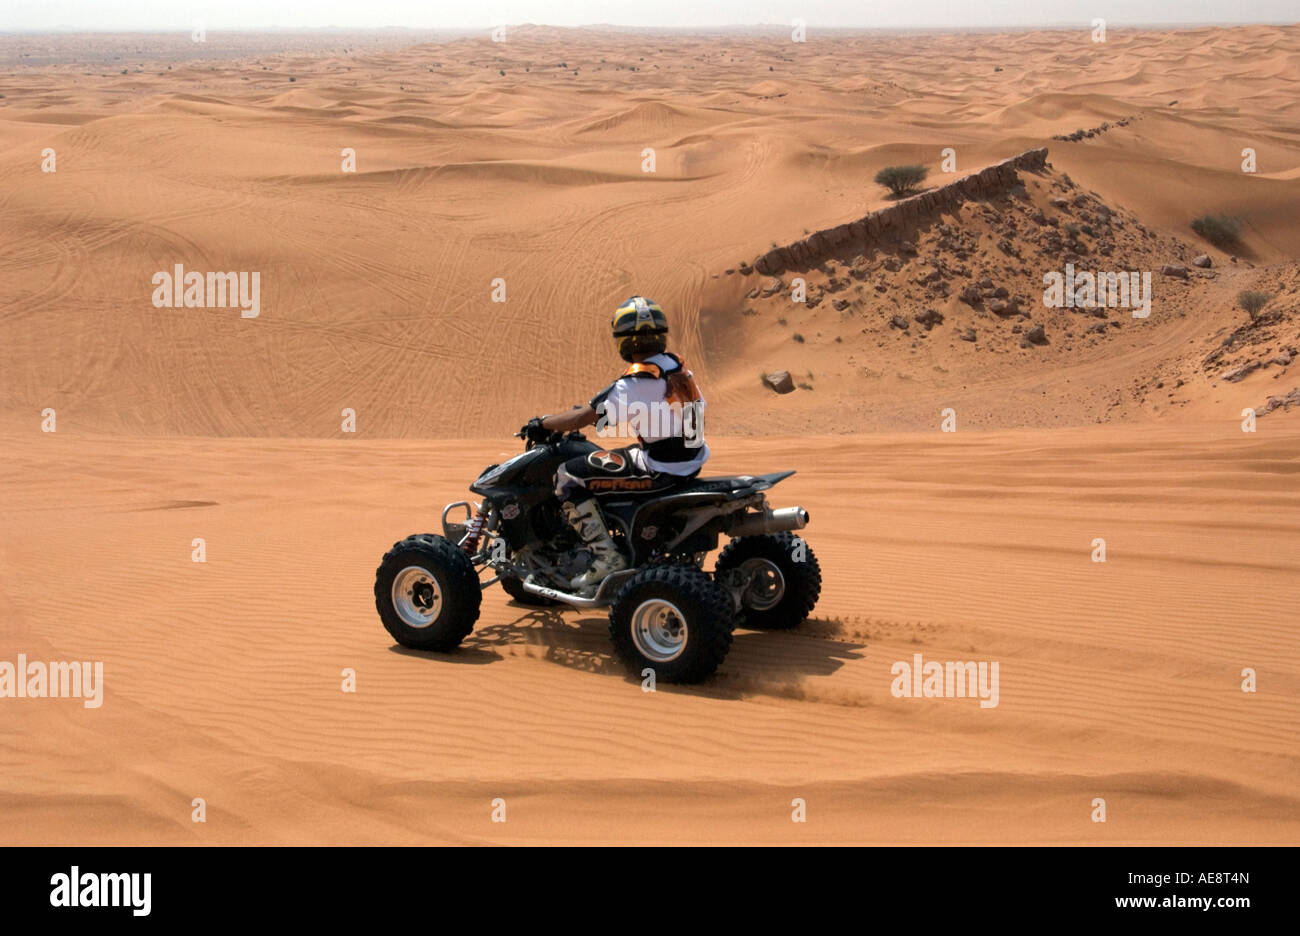 Rider on quadbike on sand dune above Dubai desert Stock Photo